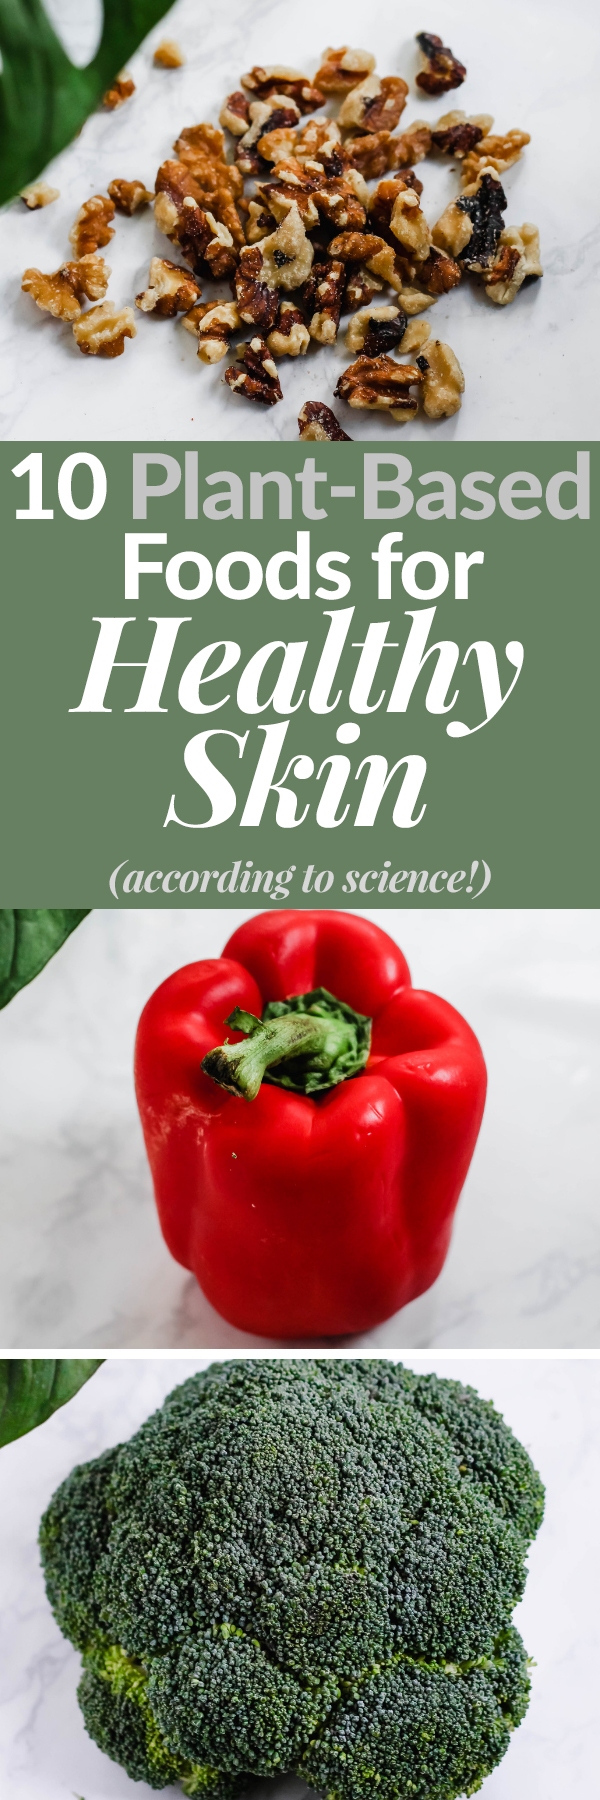 10 Plant-Based Foods for Healthy Skin - Emilie Eats